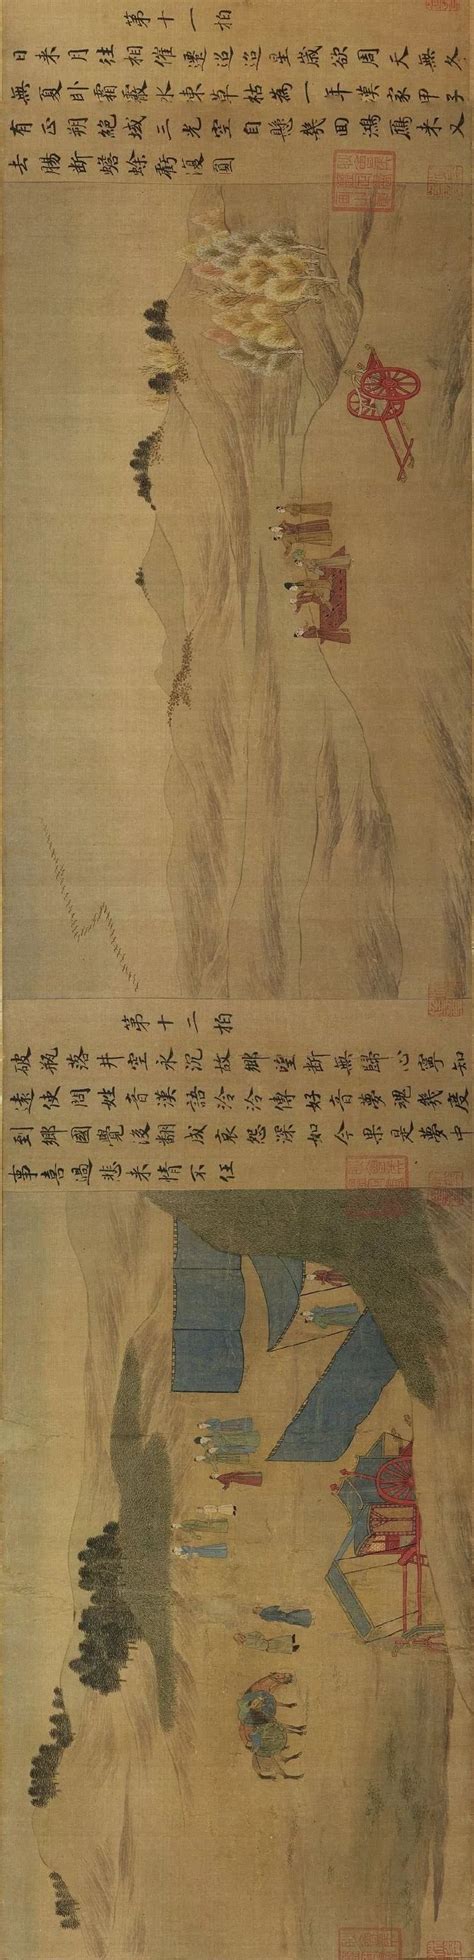 宋代绘《胡笳十八拍图》中的甲马-军事史-图片